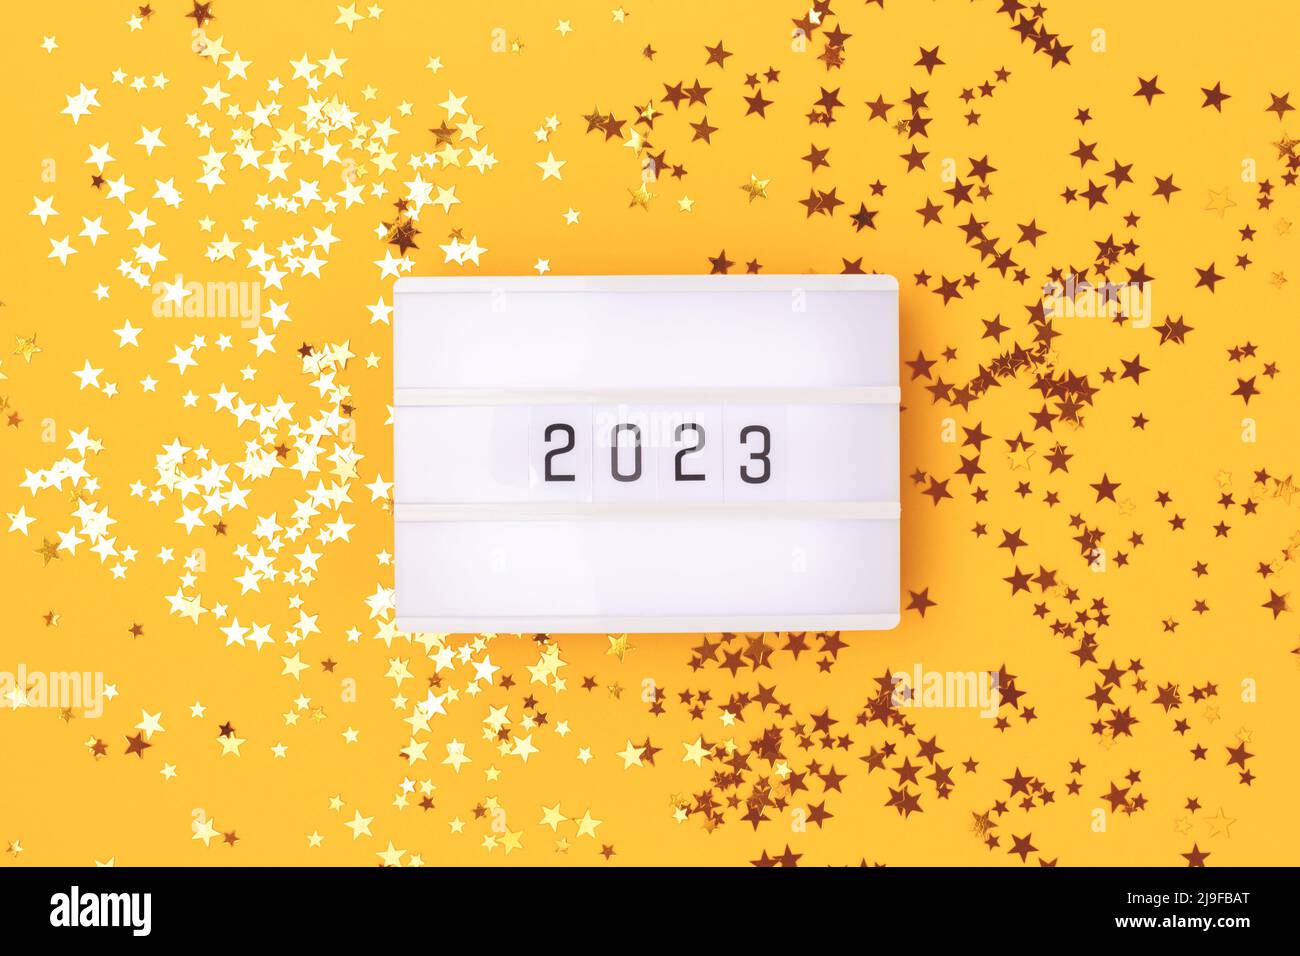 Lightbox mit 2023 Zahlen auf gelbem Hintergrund mit goldenen Sternen  Konfetti Stockfotografie - Alamy